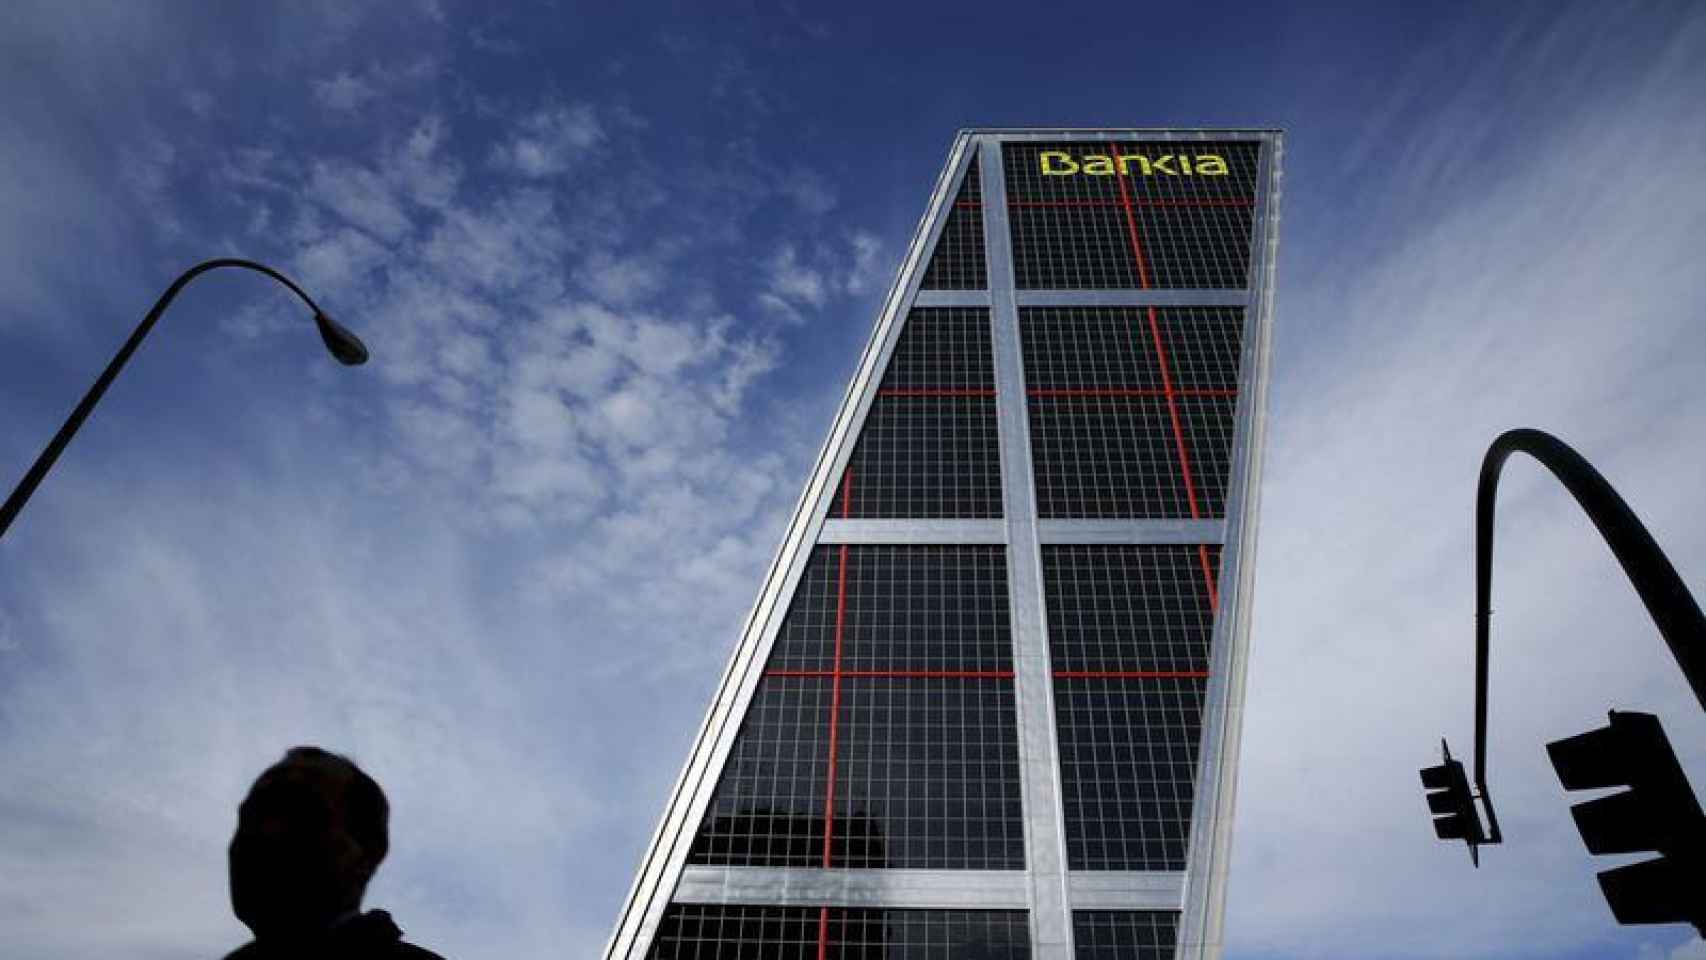 El exterior de la sede central de Bankia, en una imagen de archivo / EFE